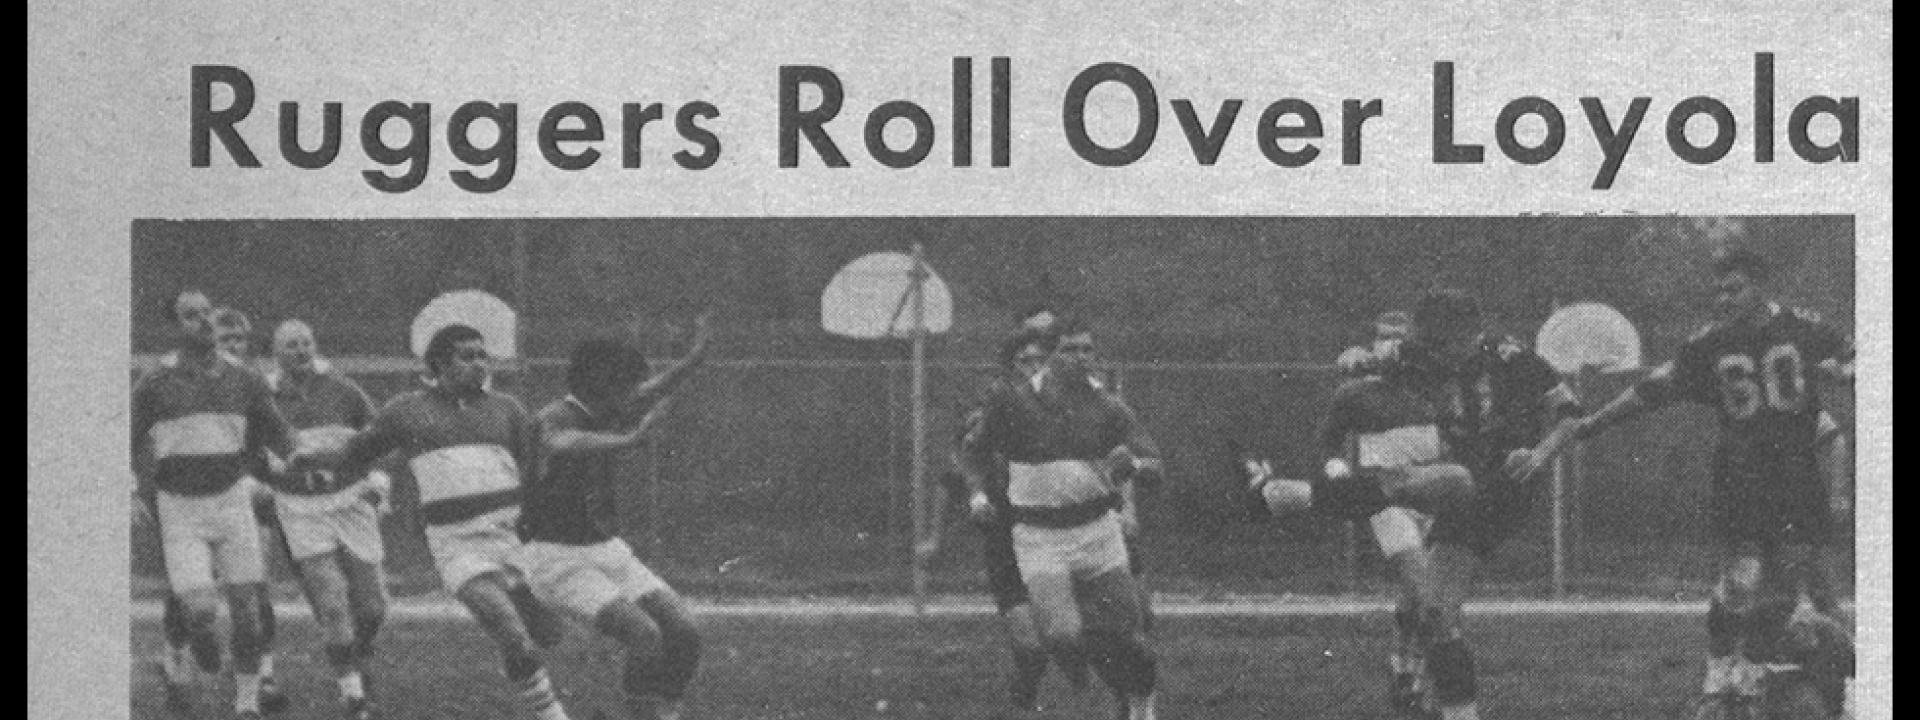 Men on soccer field. Text: Ruggers Roll Over Loyola. Diablos win 24:11